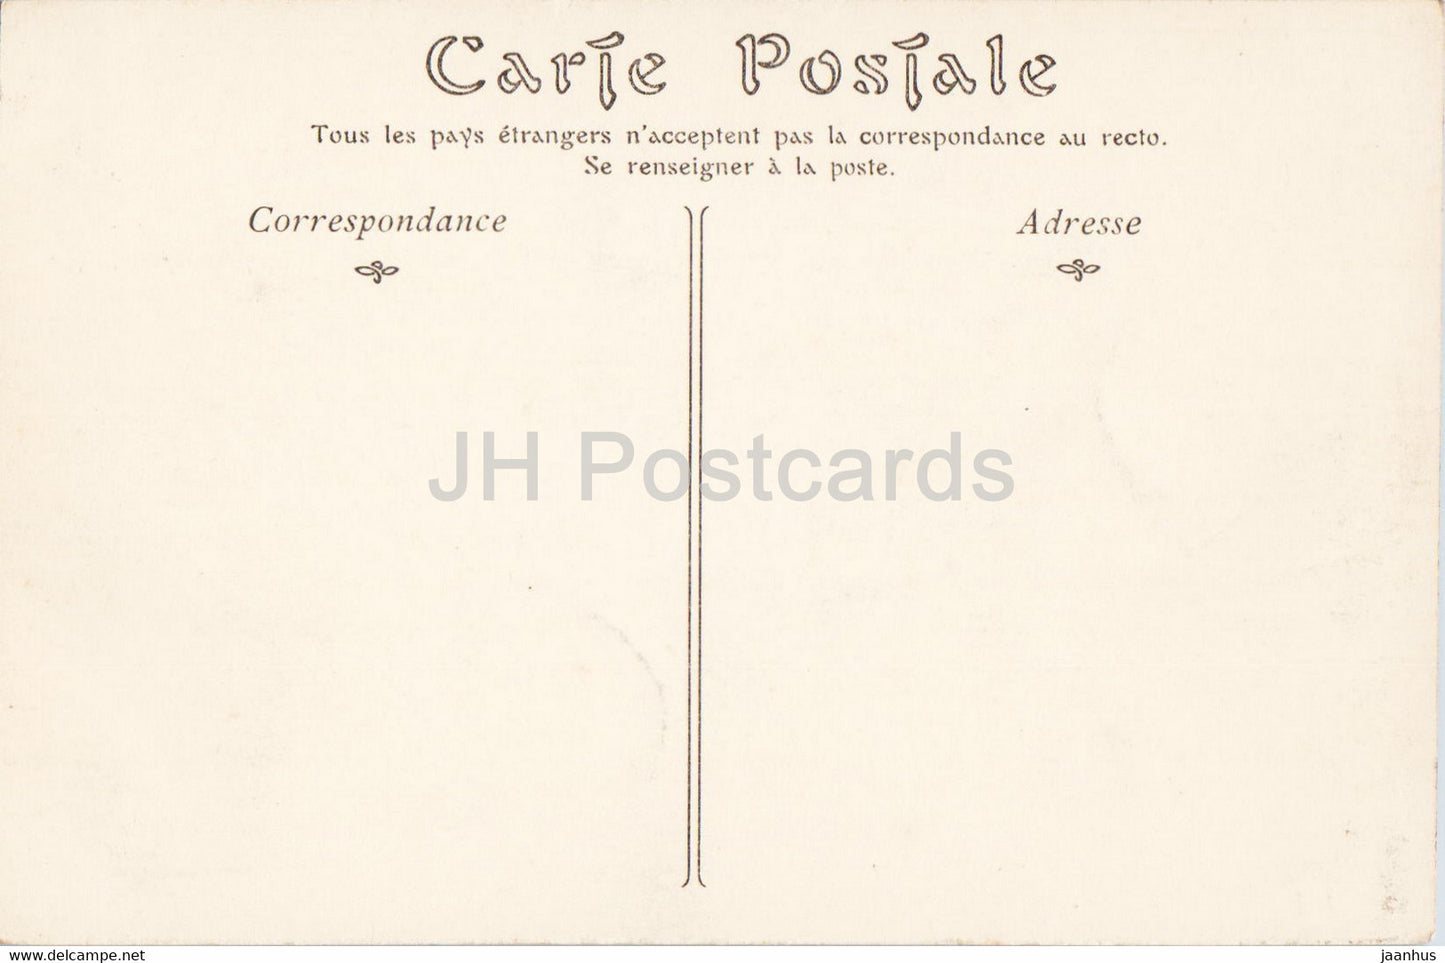 Paris - Le Jardin du Palais Royal - 128 - old postcard - France - unused